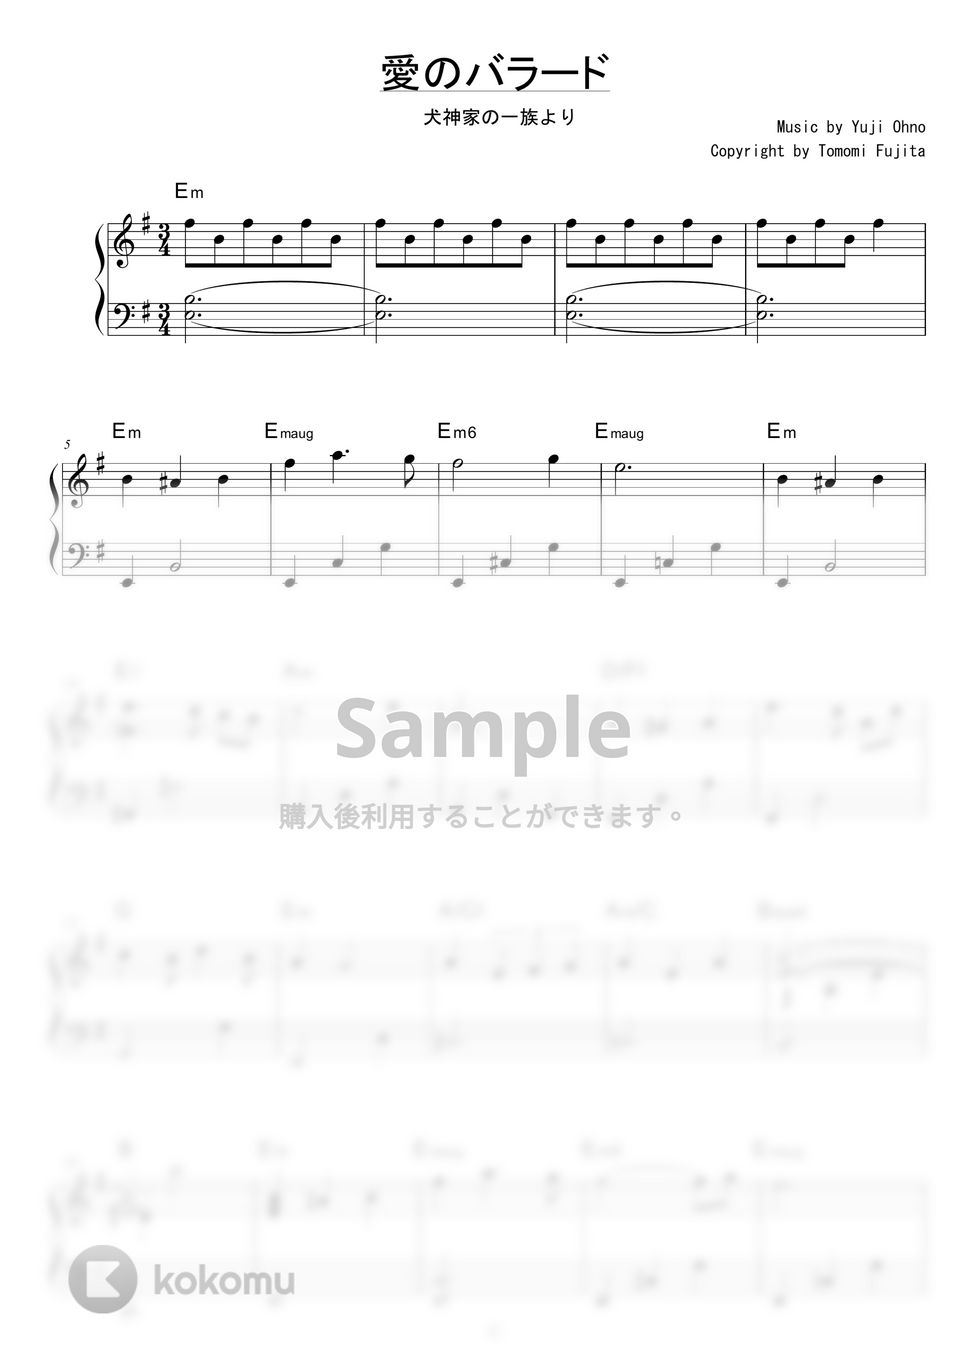 大野雄二 - 愛のバラード (犬神家の一族より) by piano*score